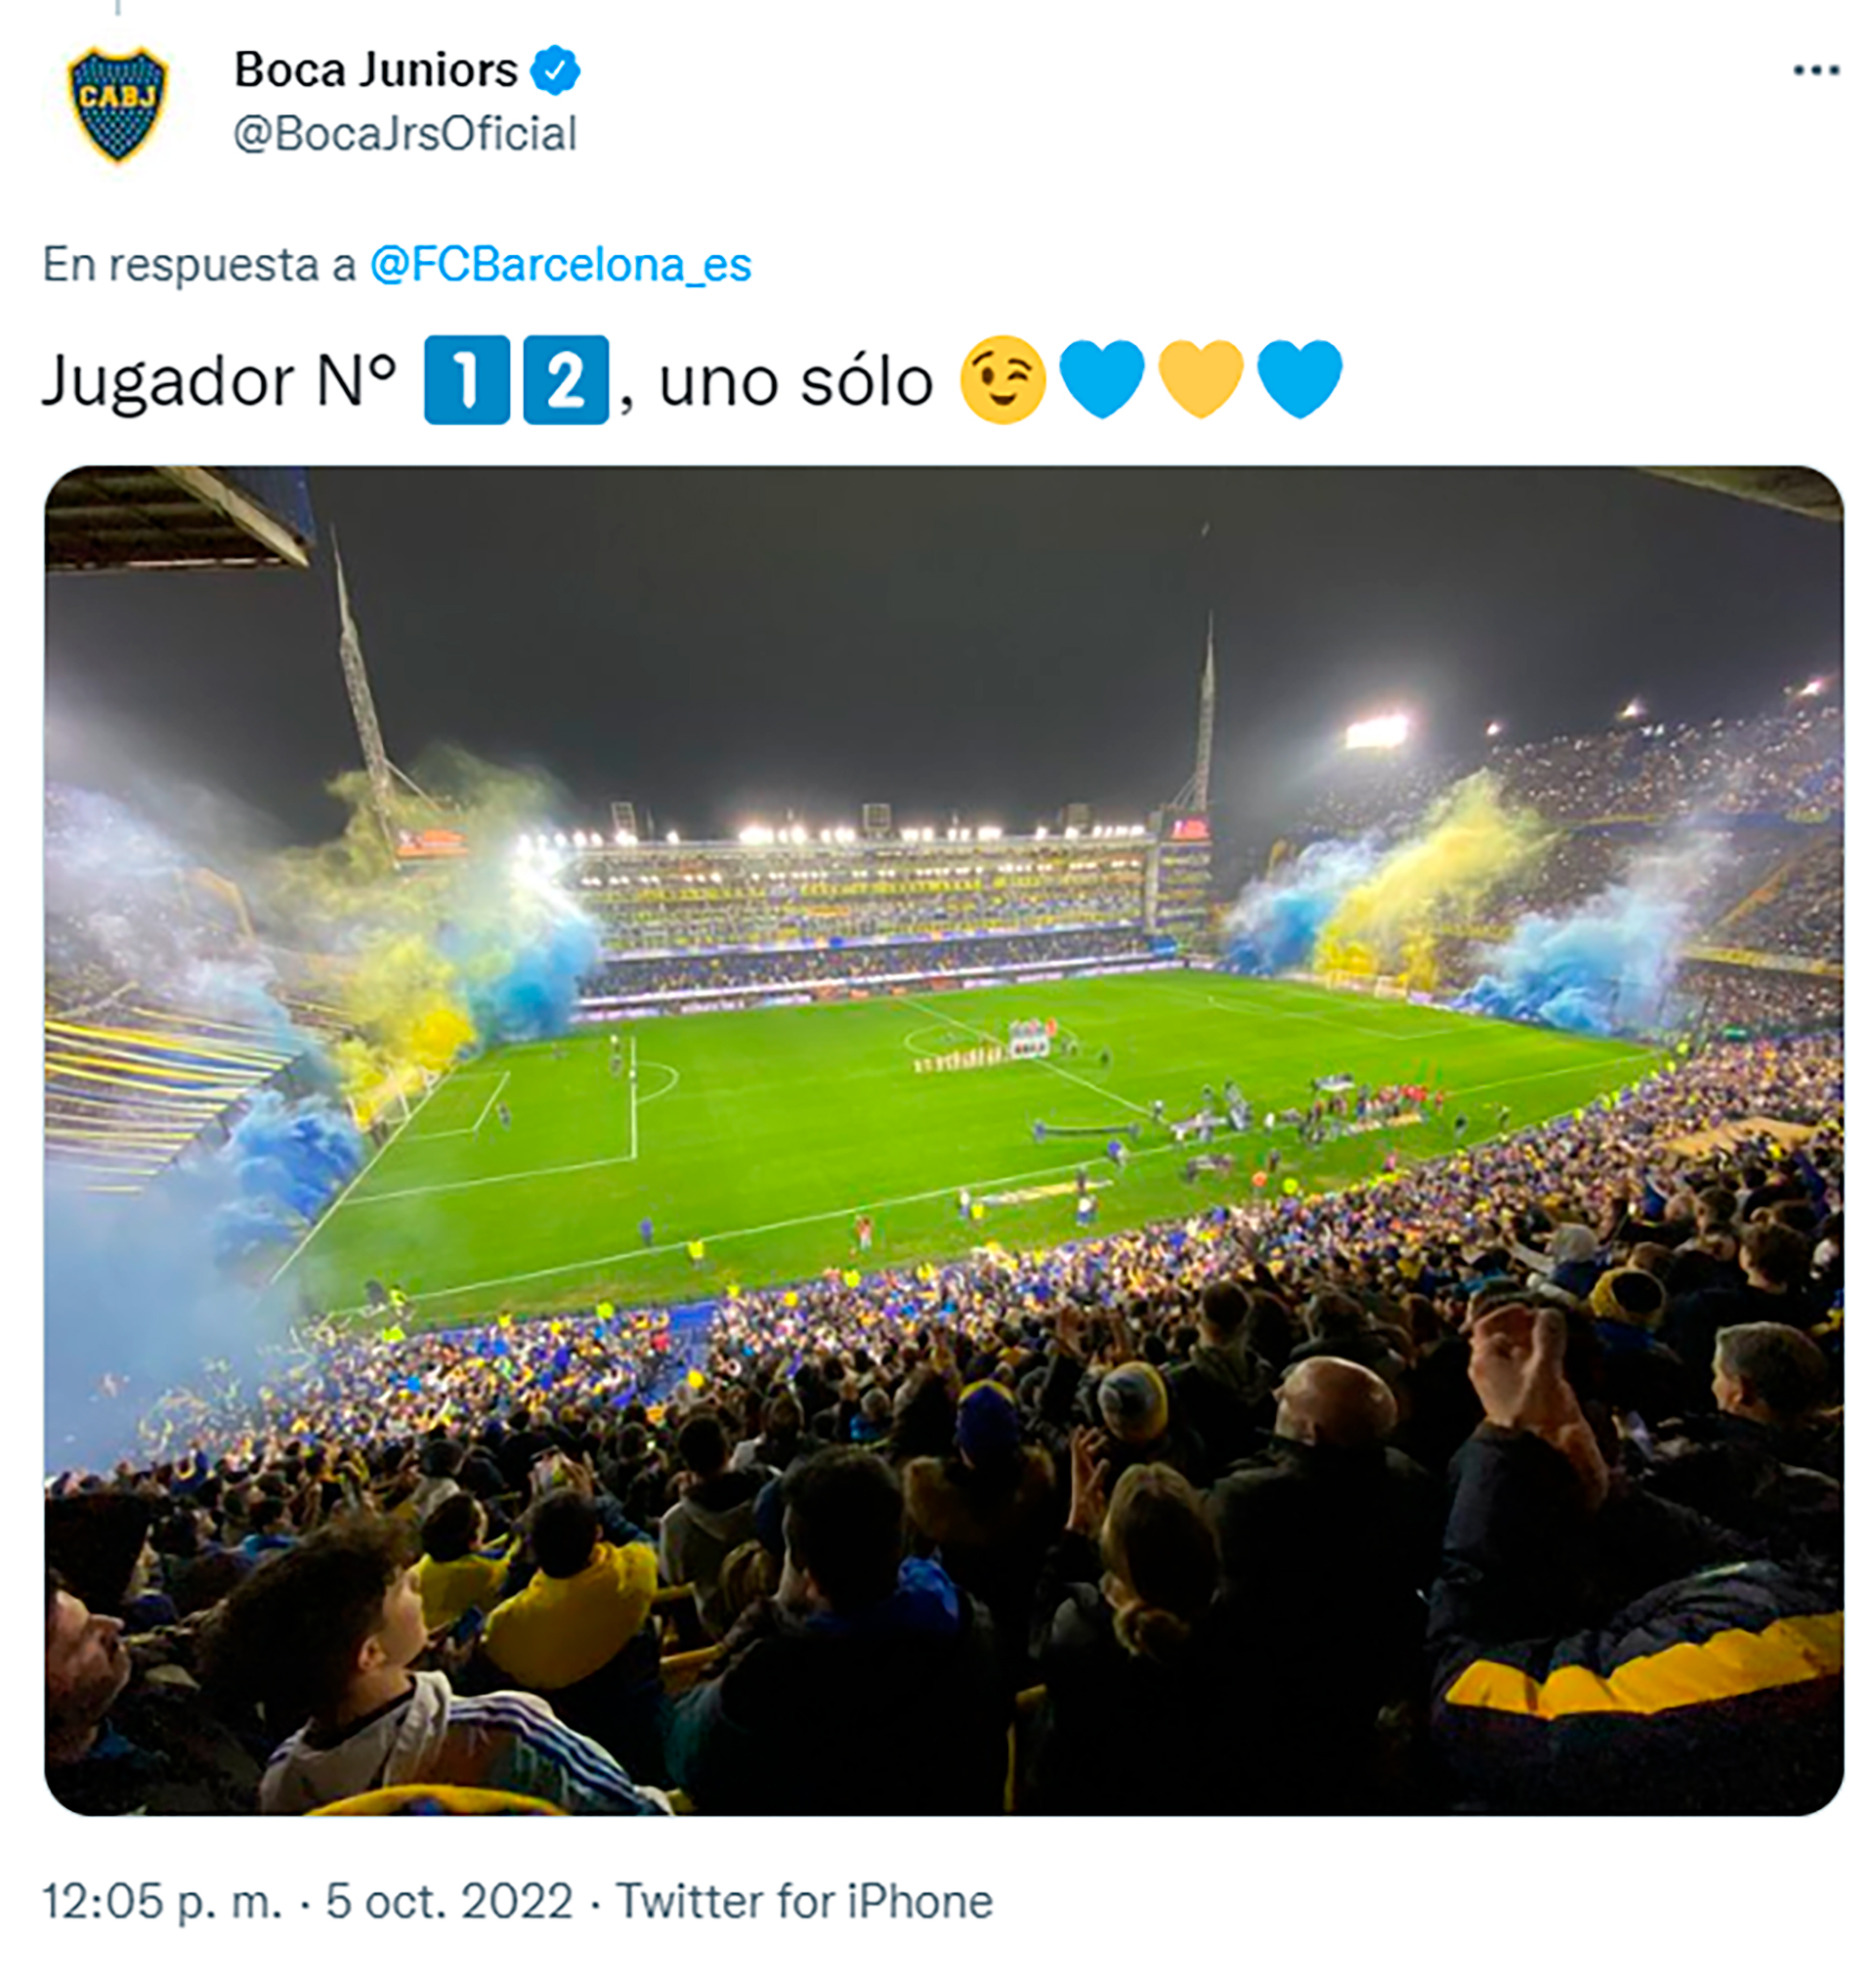 La respuesta de Boca Juniors al FC Barcelona en relación a una publicación sobre el Jugador número 12 (Twitter)